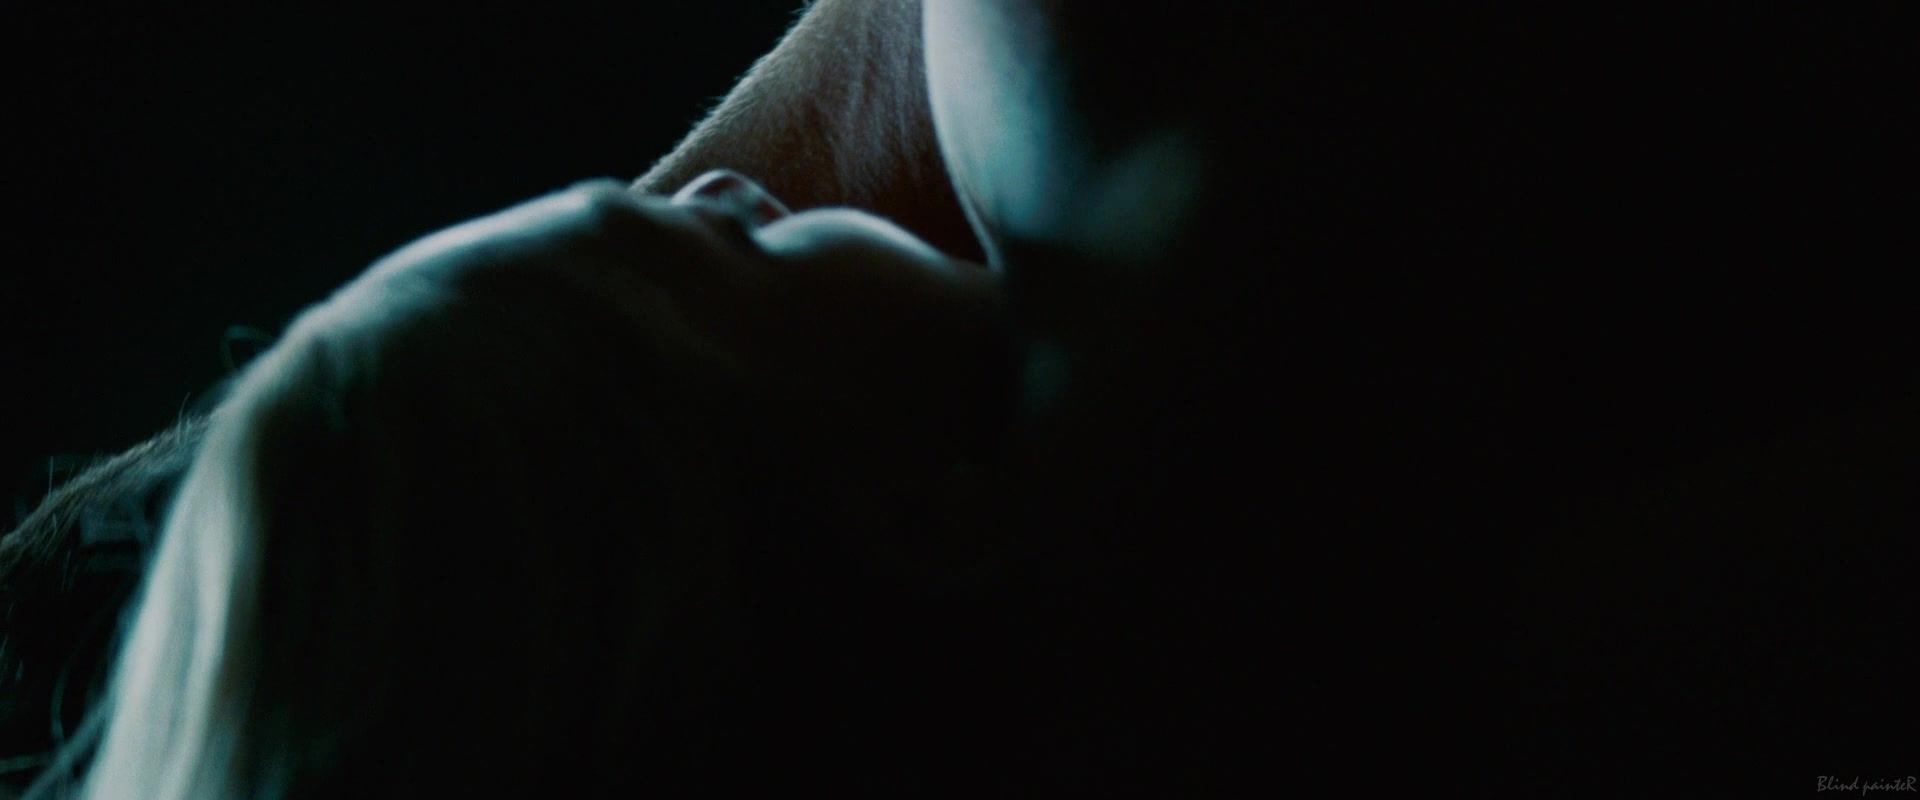 Man Amanda Seyfried nude - Dear John (2010) Cougar